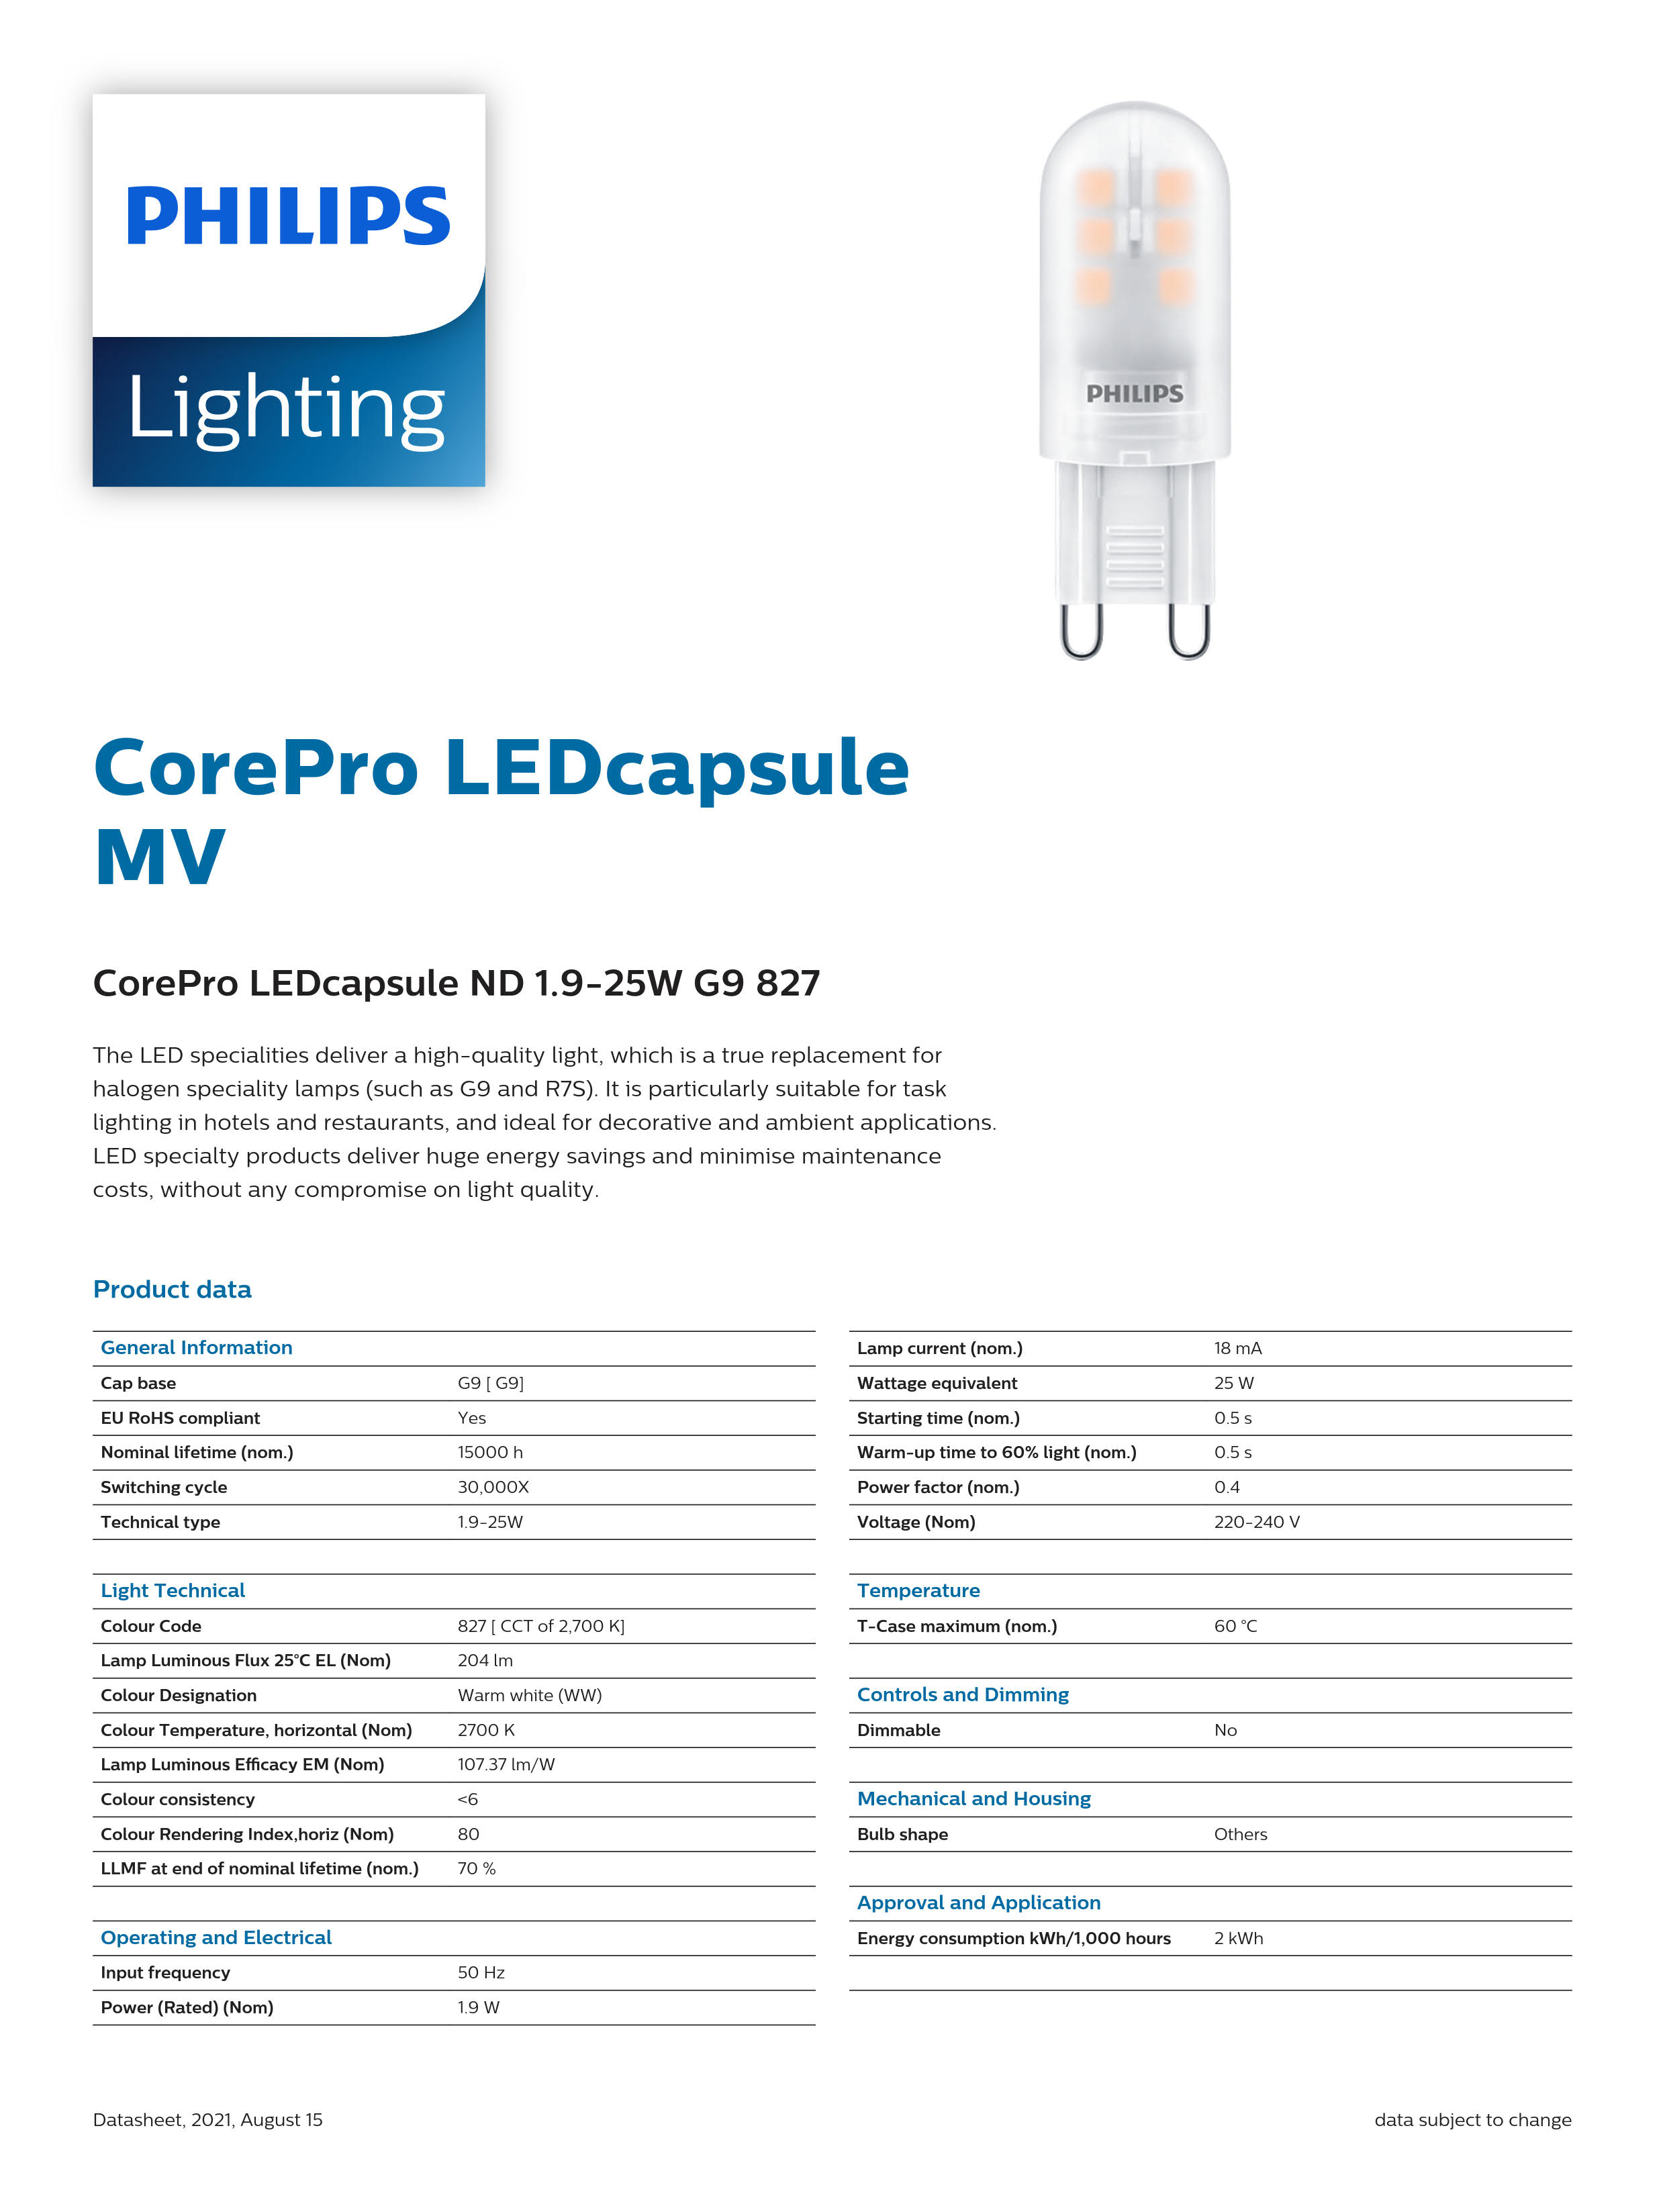 PHILIPS CorePro LEDcapsule ND 1.9-25W G9 827 929001323802